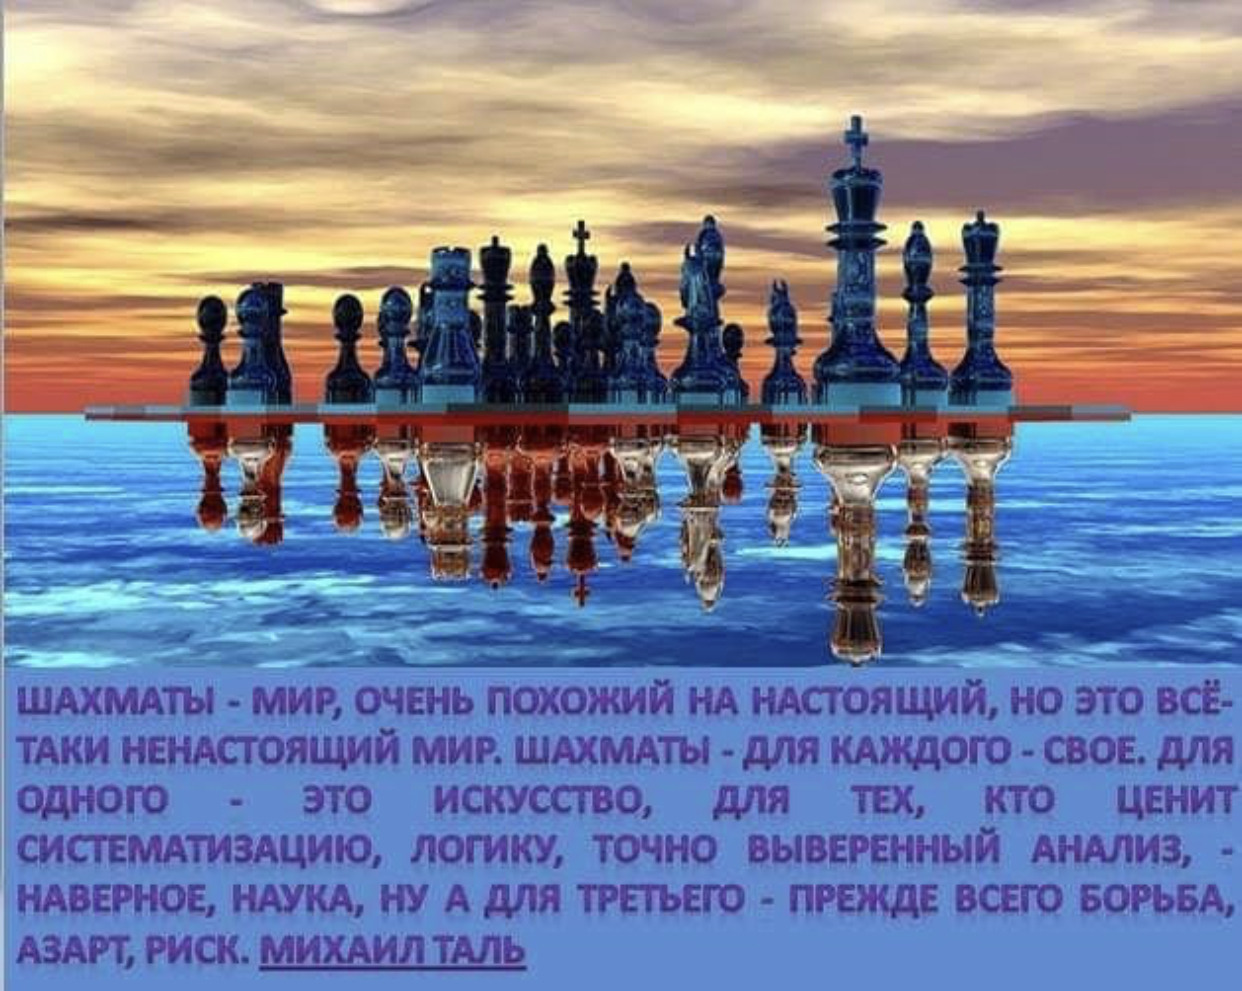 5dd0a5b298391 - Цитаты Про шахматы